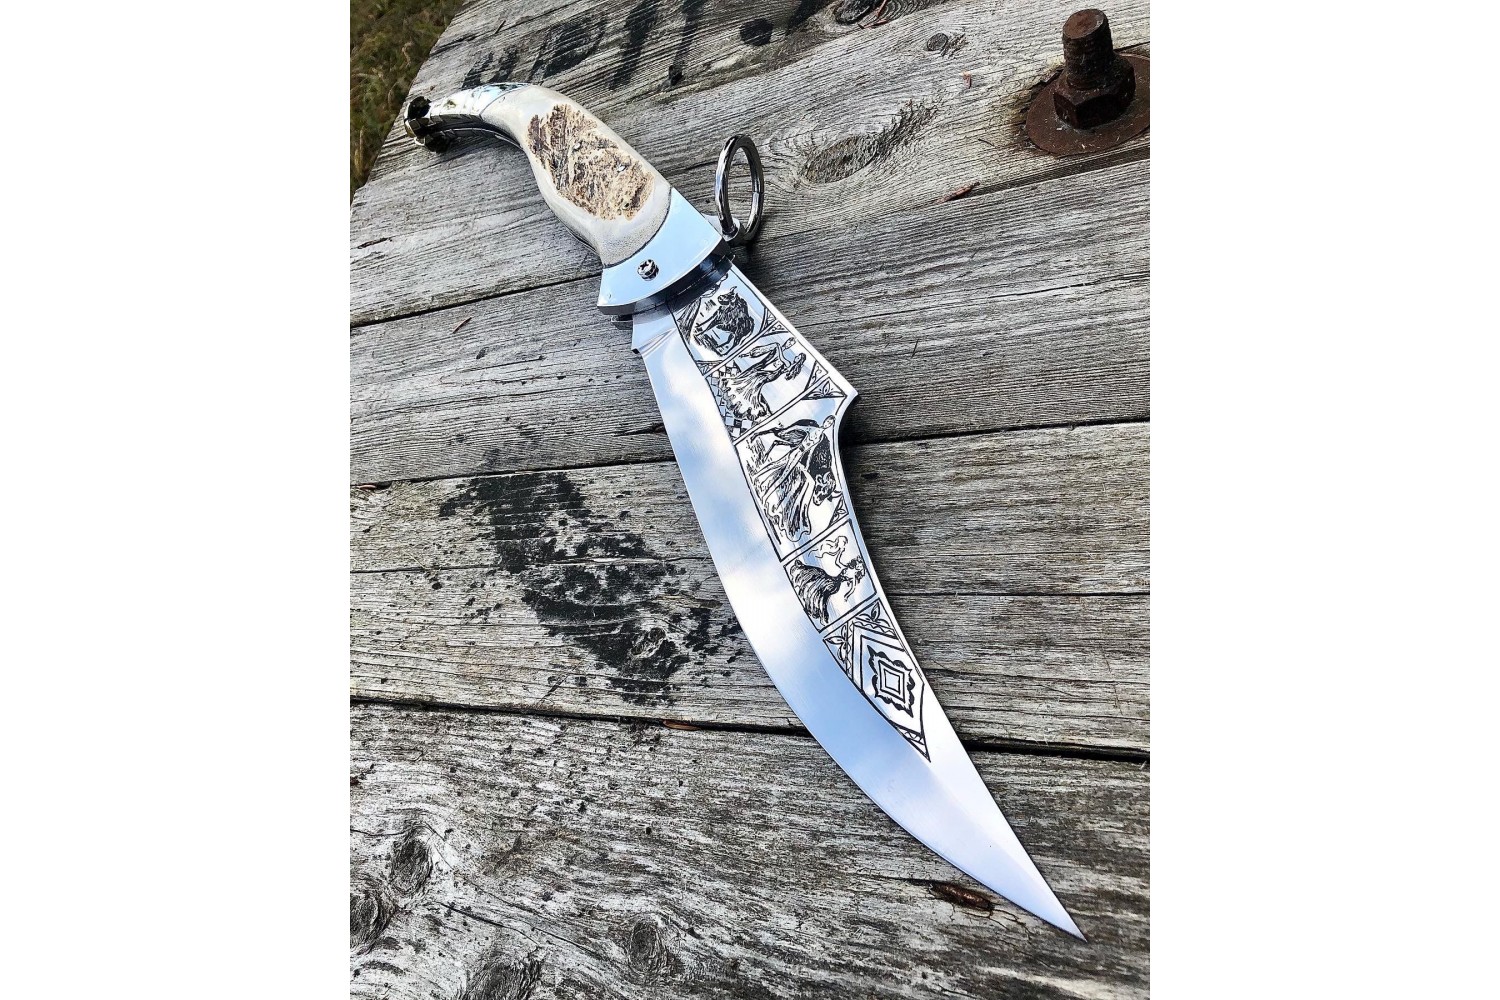  складной нож Наваха - отечественная версия